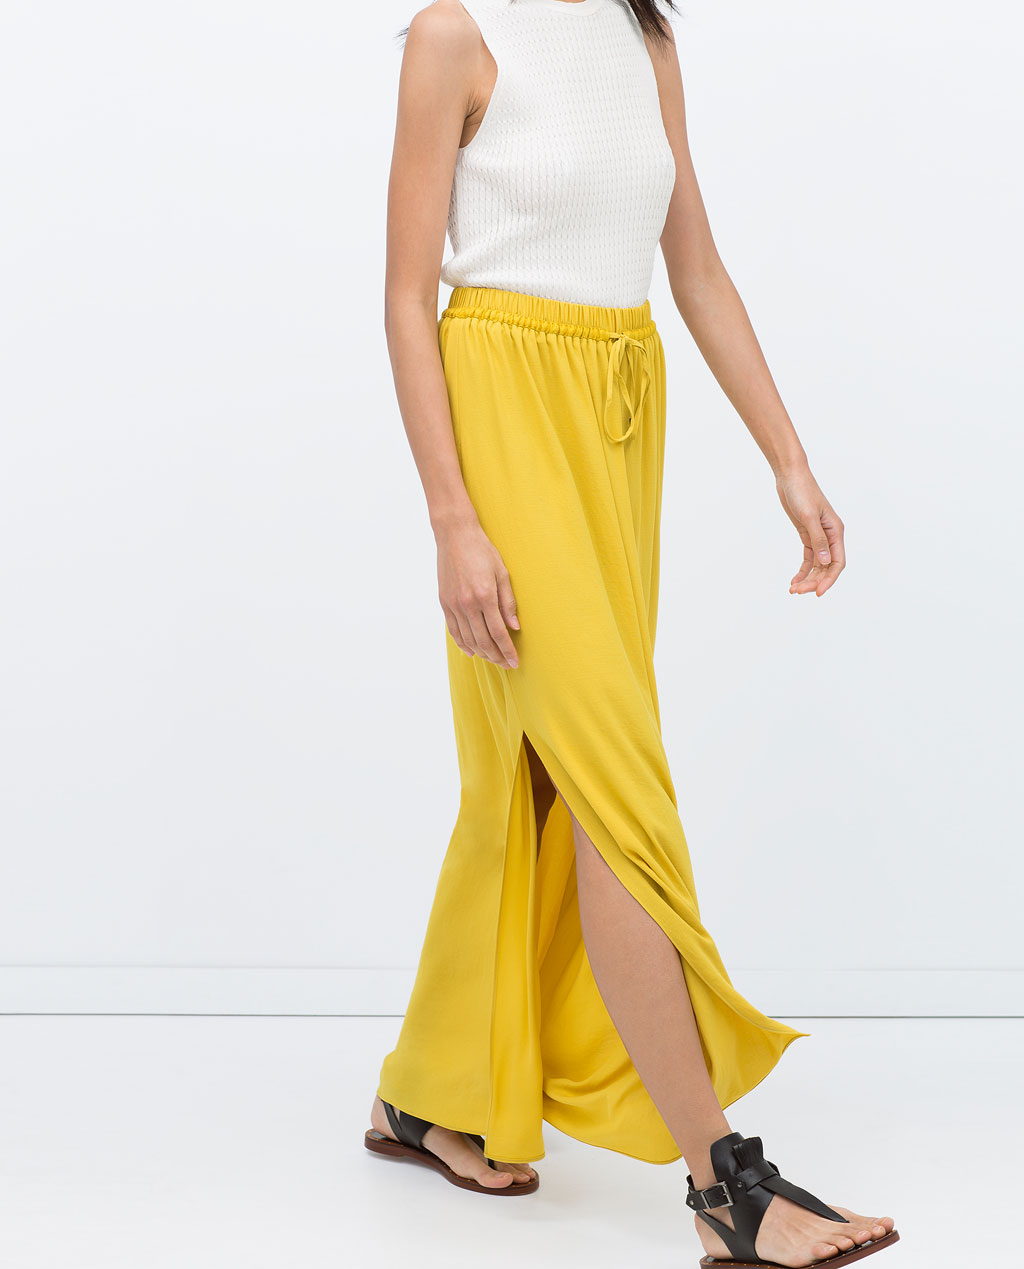 Redondear a la baja Interpretación harina Maxi faldas en la colección primavera/verano 2015 de Zara - Modalia.es